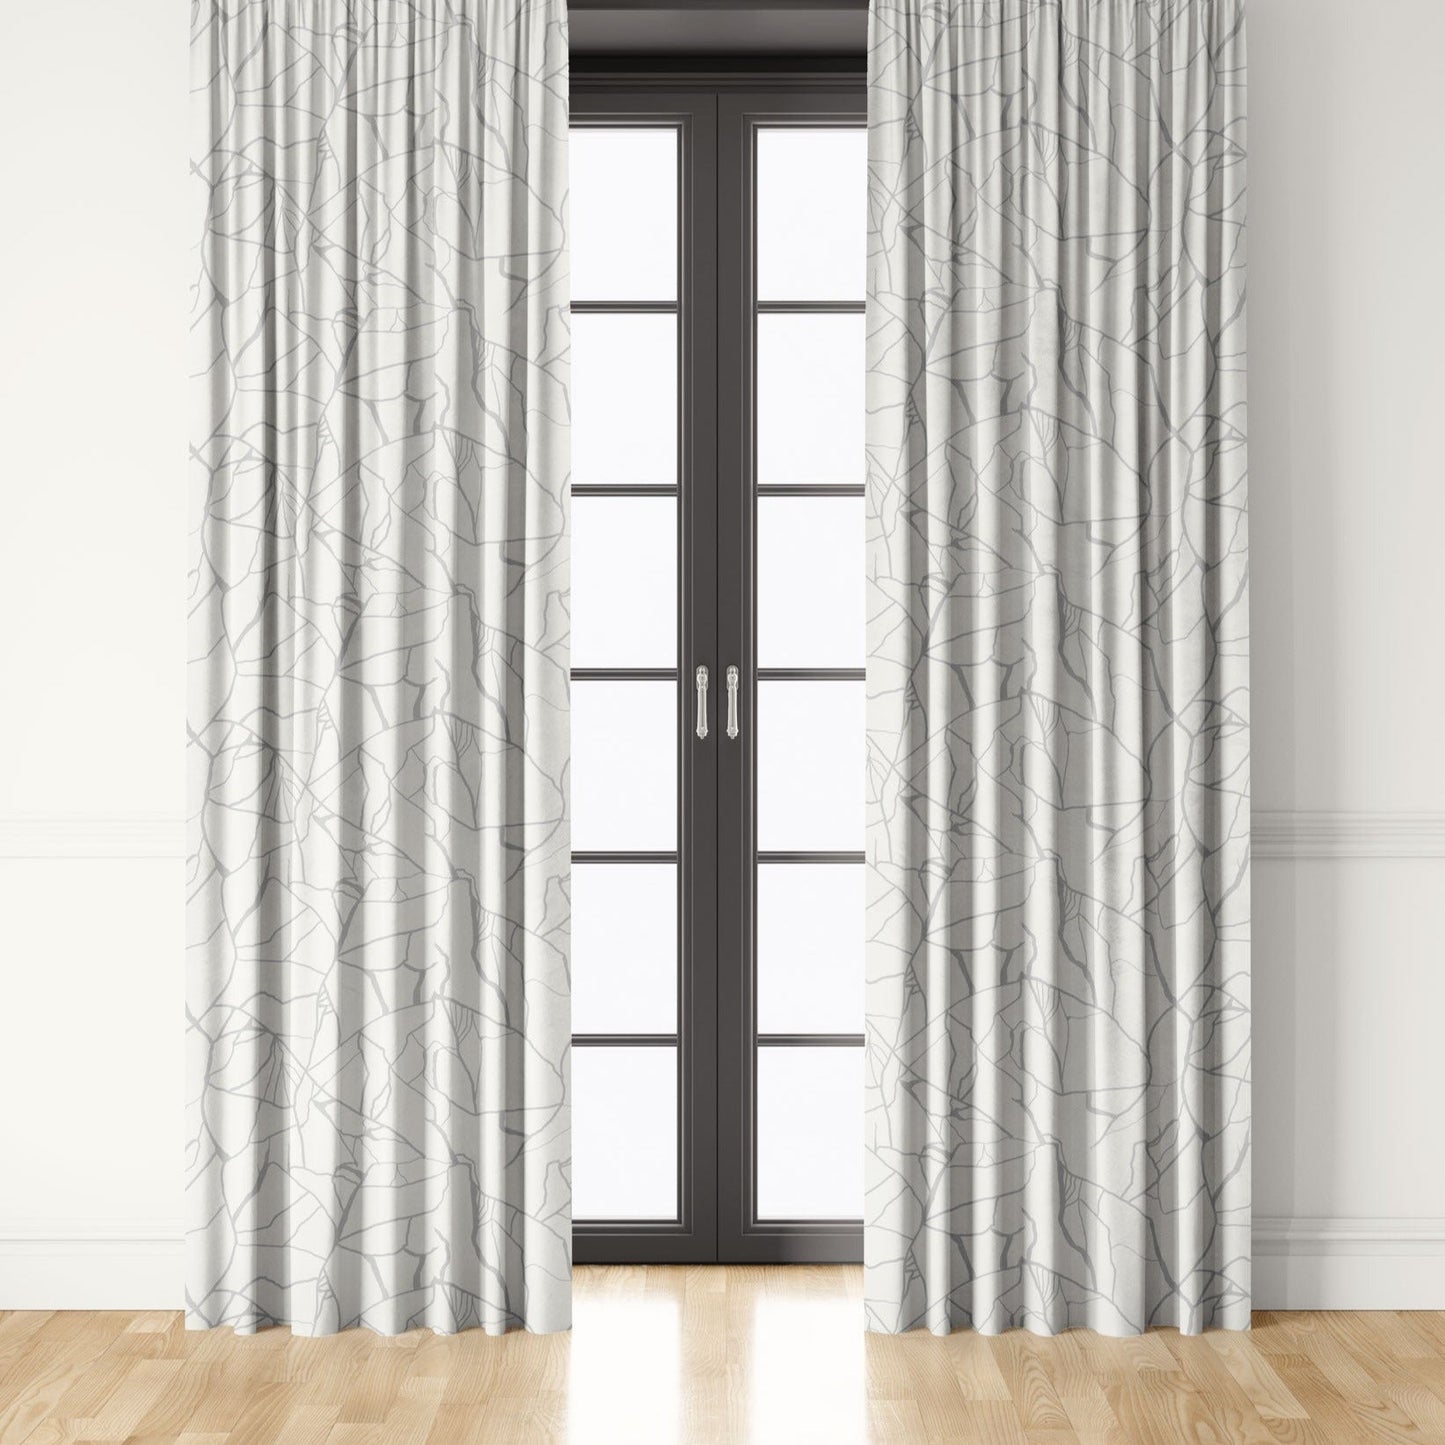 Seaglass Curtains